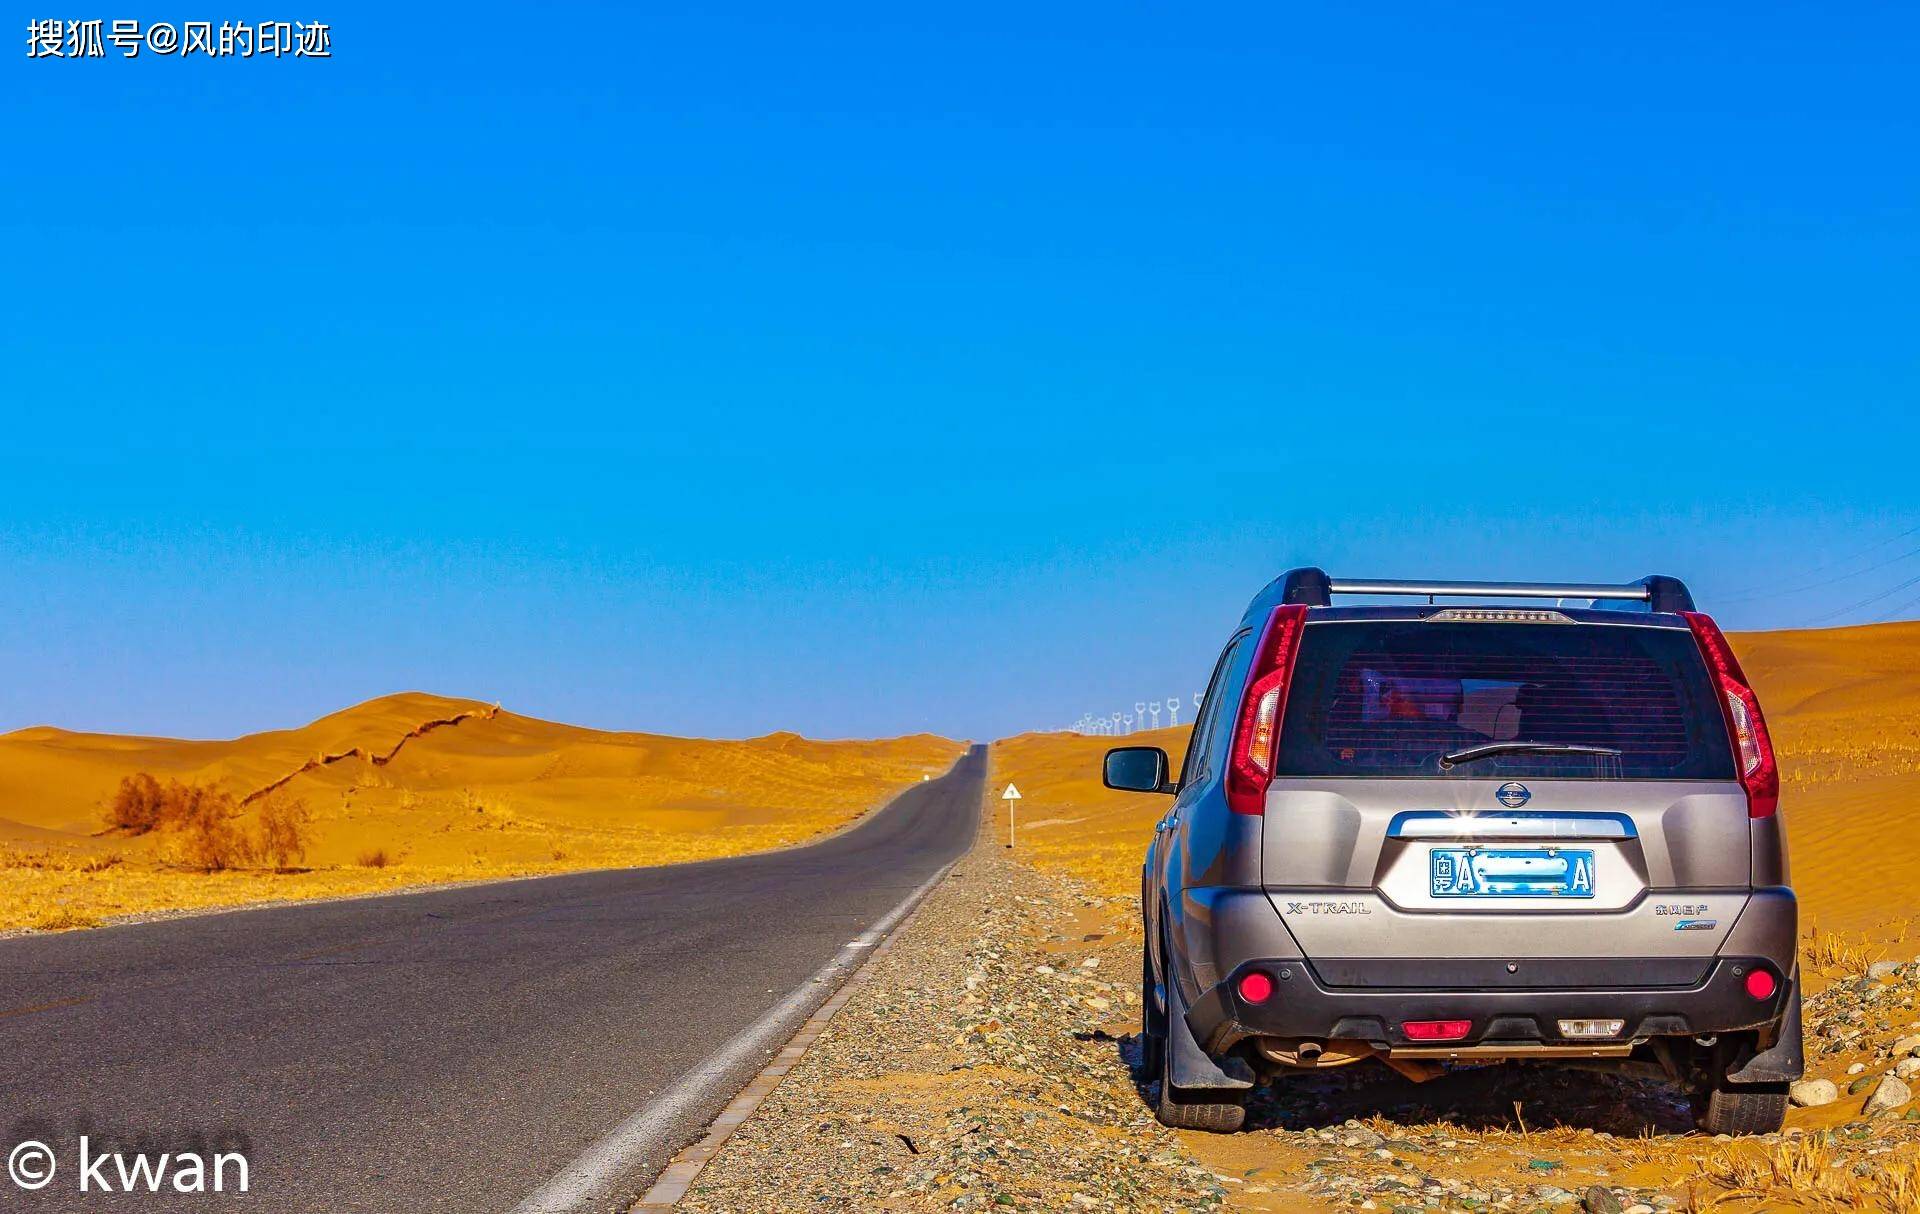 新疆的塔克拉玛干沙漠公路，是世界上穿越流动沙漠最长的一条公路